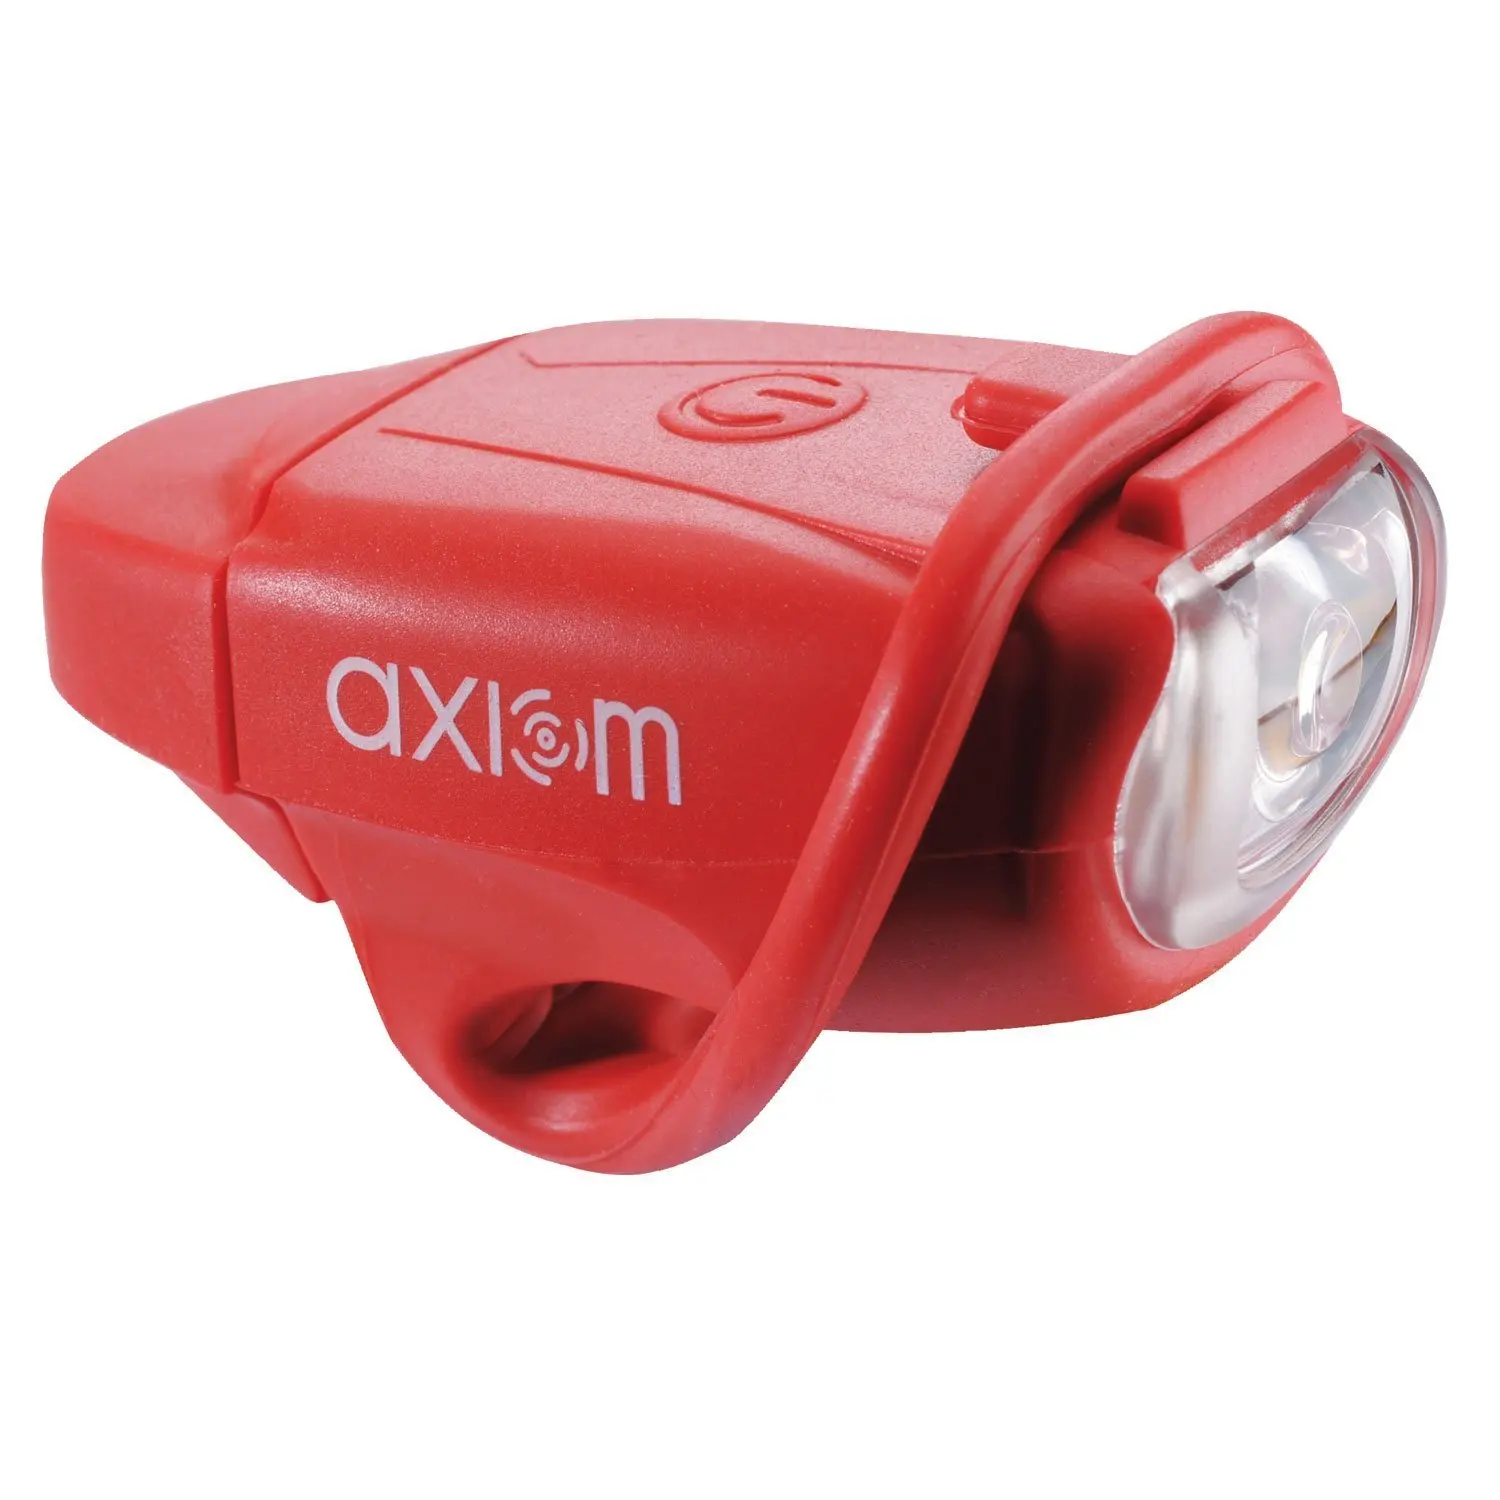 axiom bike light